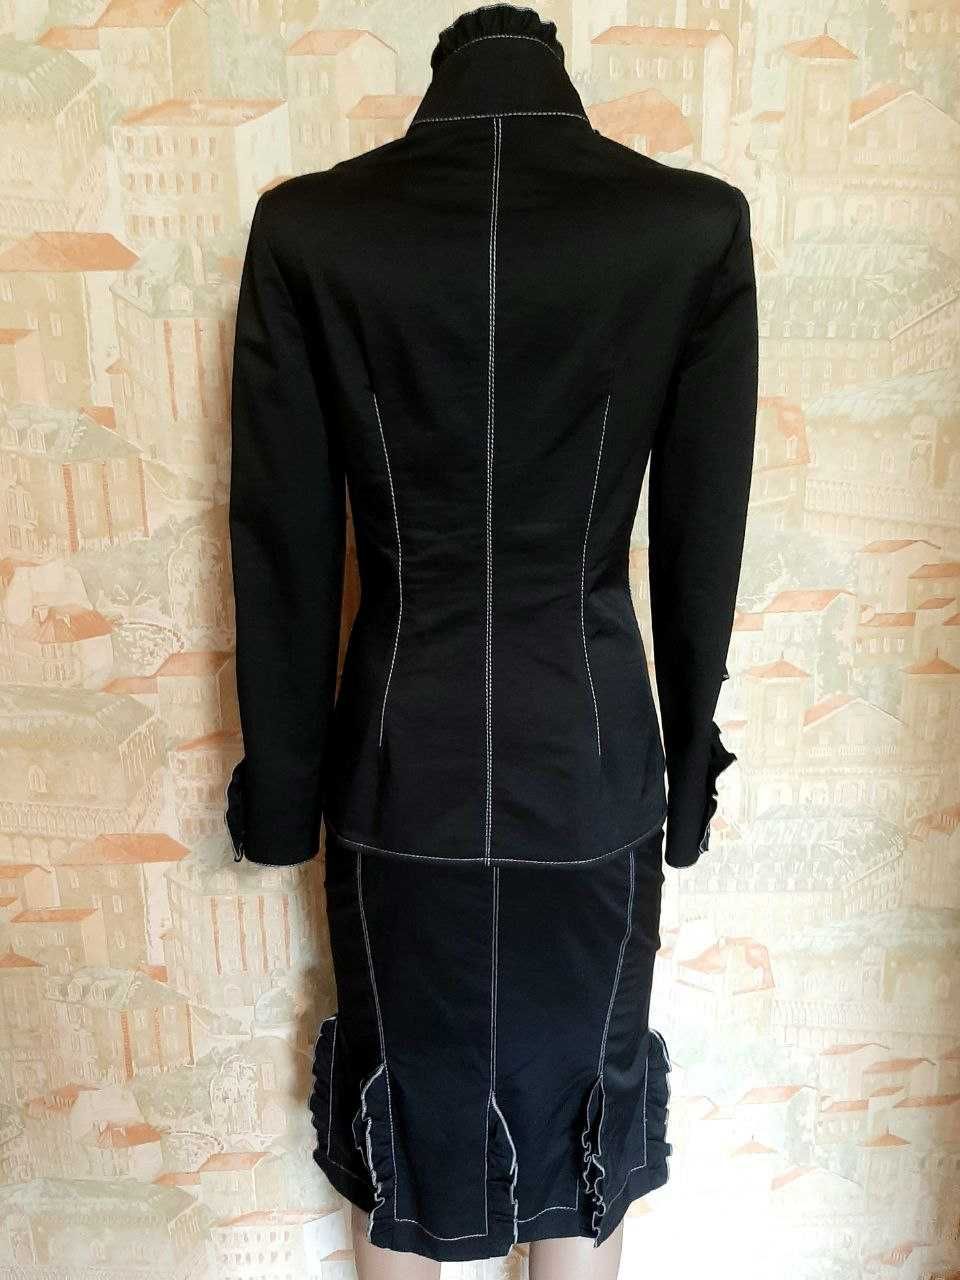 Блуза женская LUX черная 44-46р Распродажа склада!